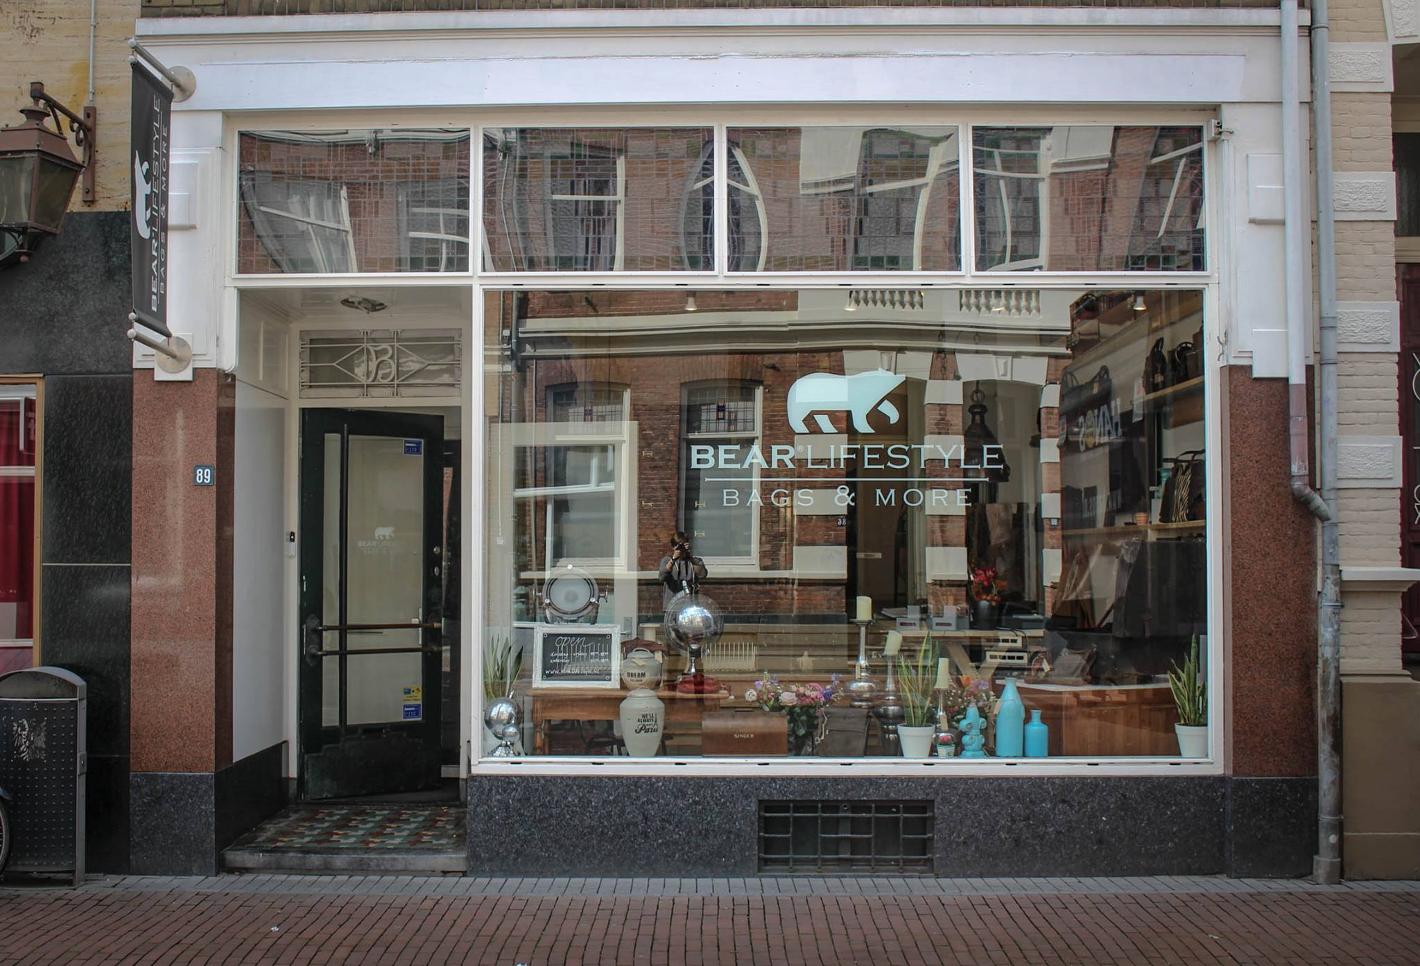 Foto BEAR Lifestyle in Nijmegen, Winkelen, Mode & kleding - #3